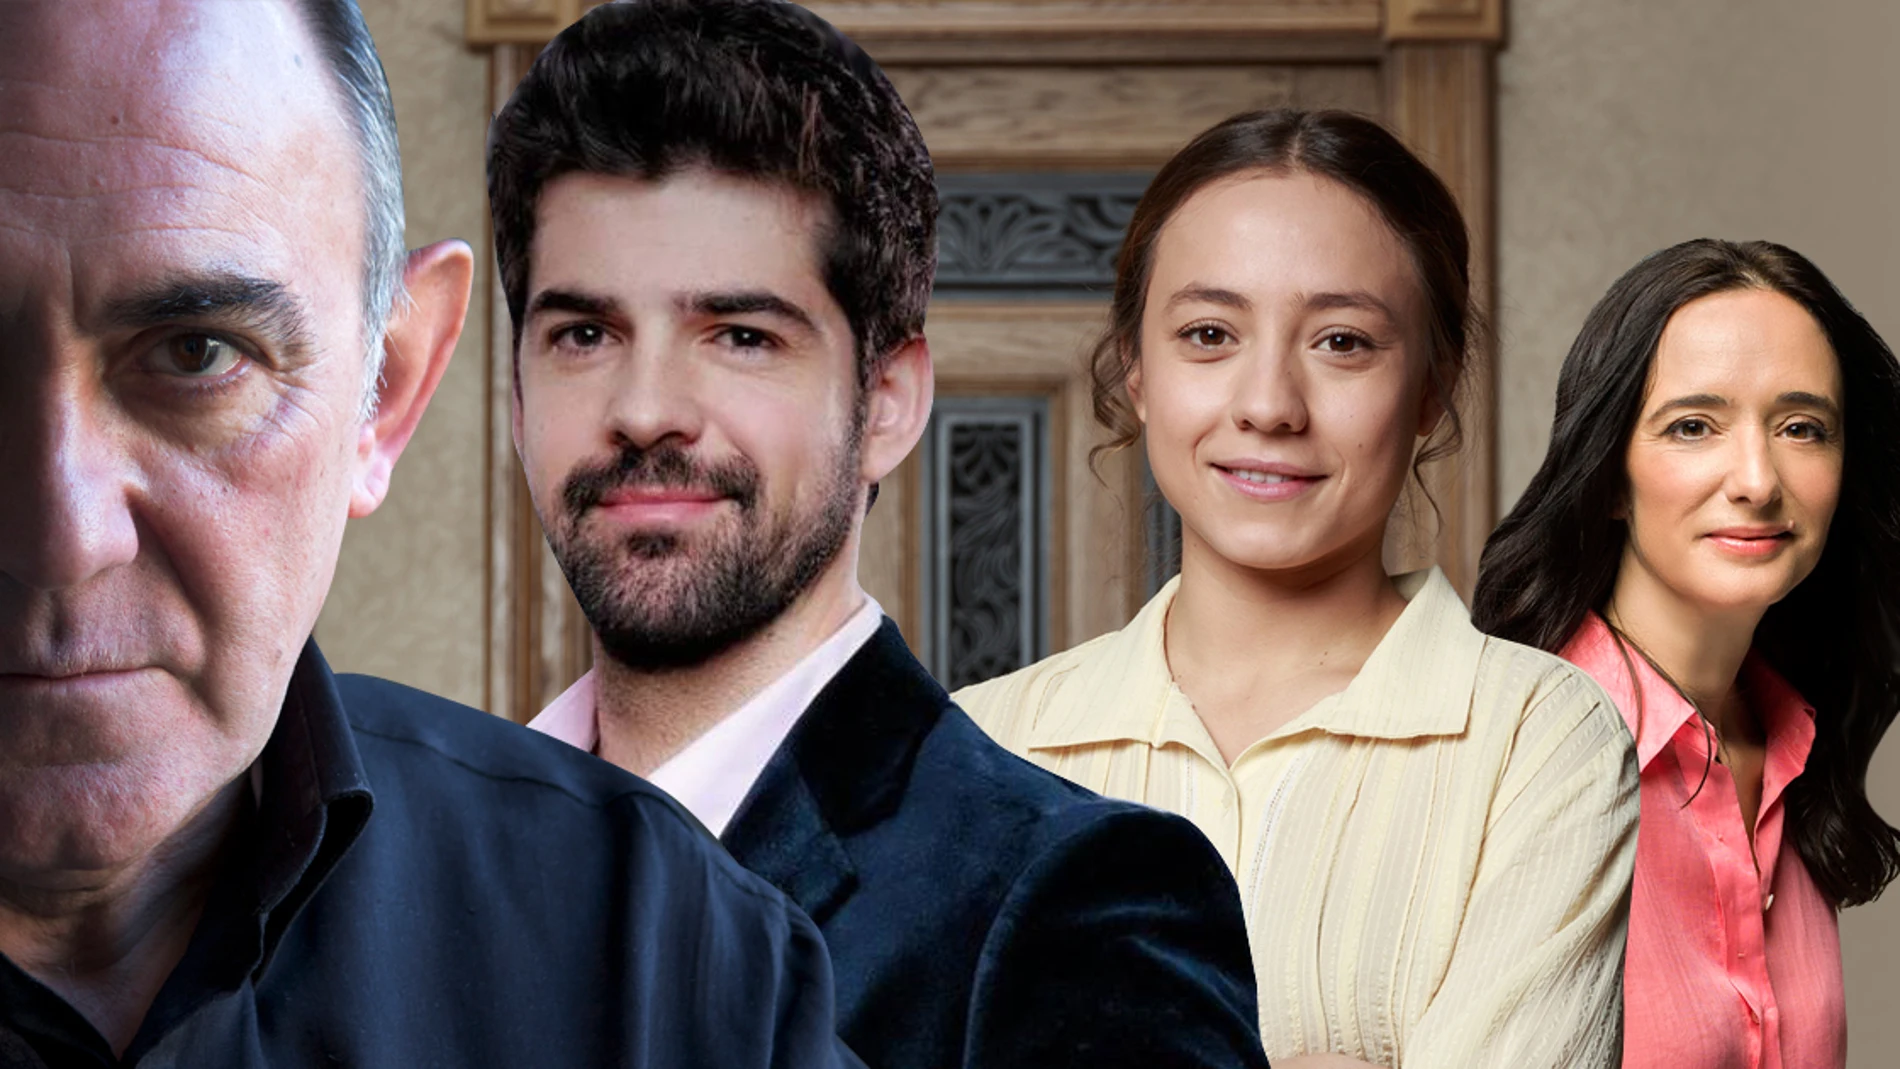  Miguel Ángel Muñoz, Ana Torrent, Blanca Parés y Arturo Querejeta completan el casting de la quinta temporada